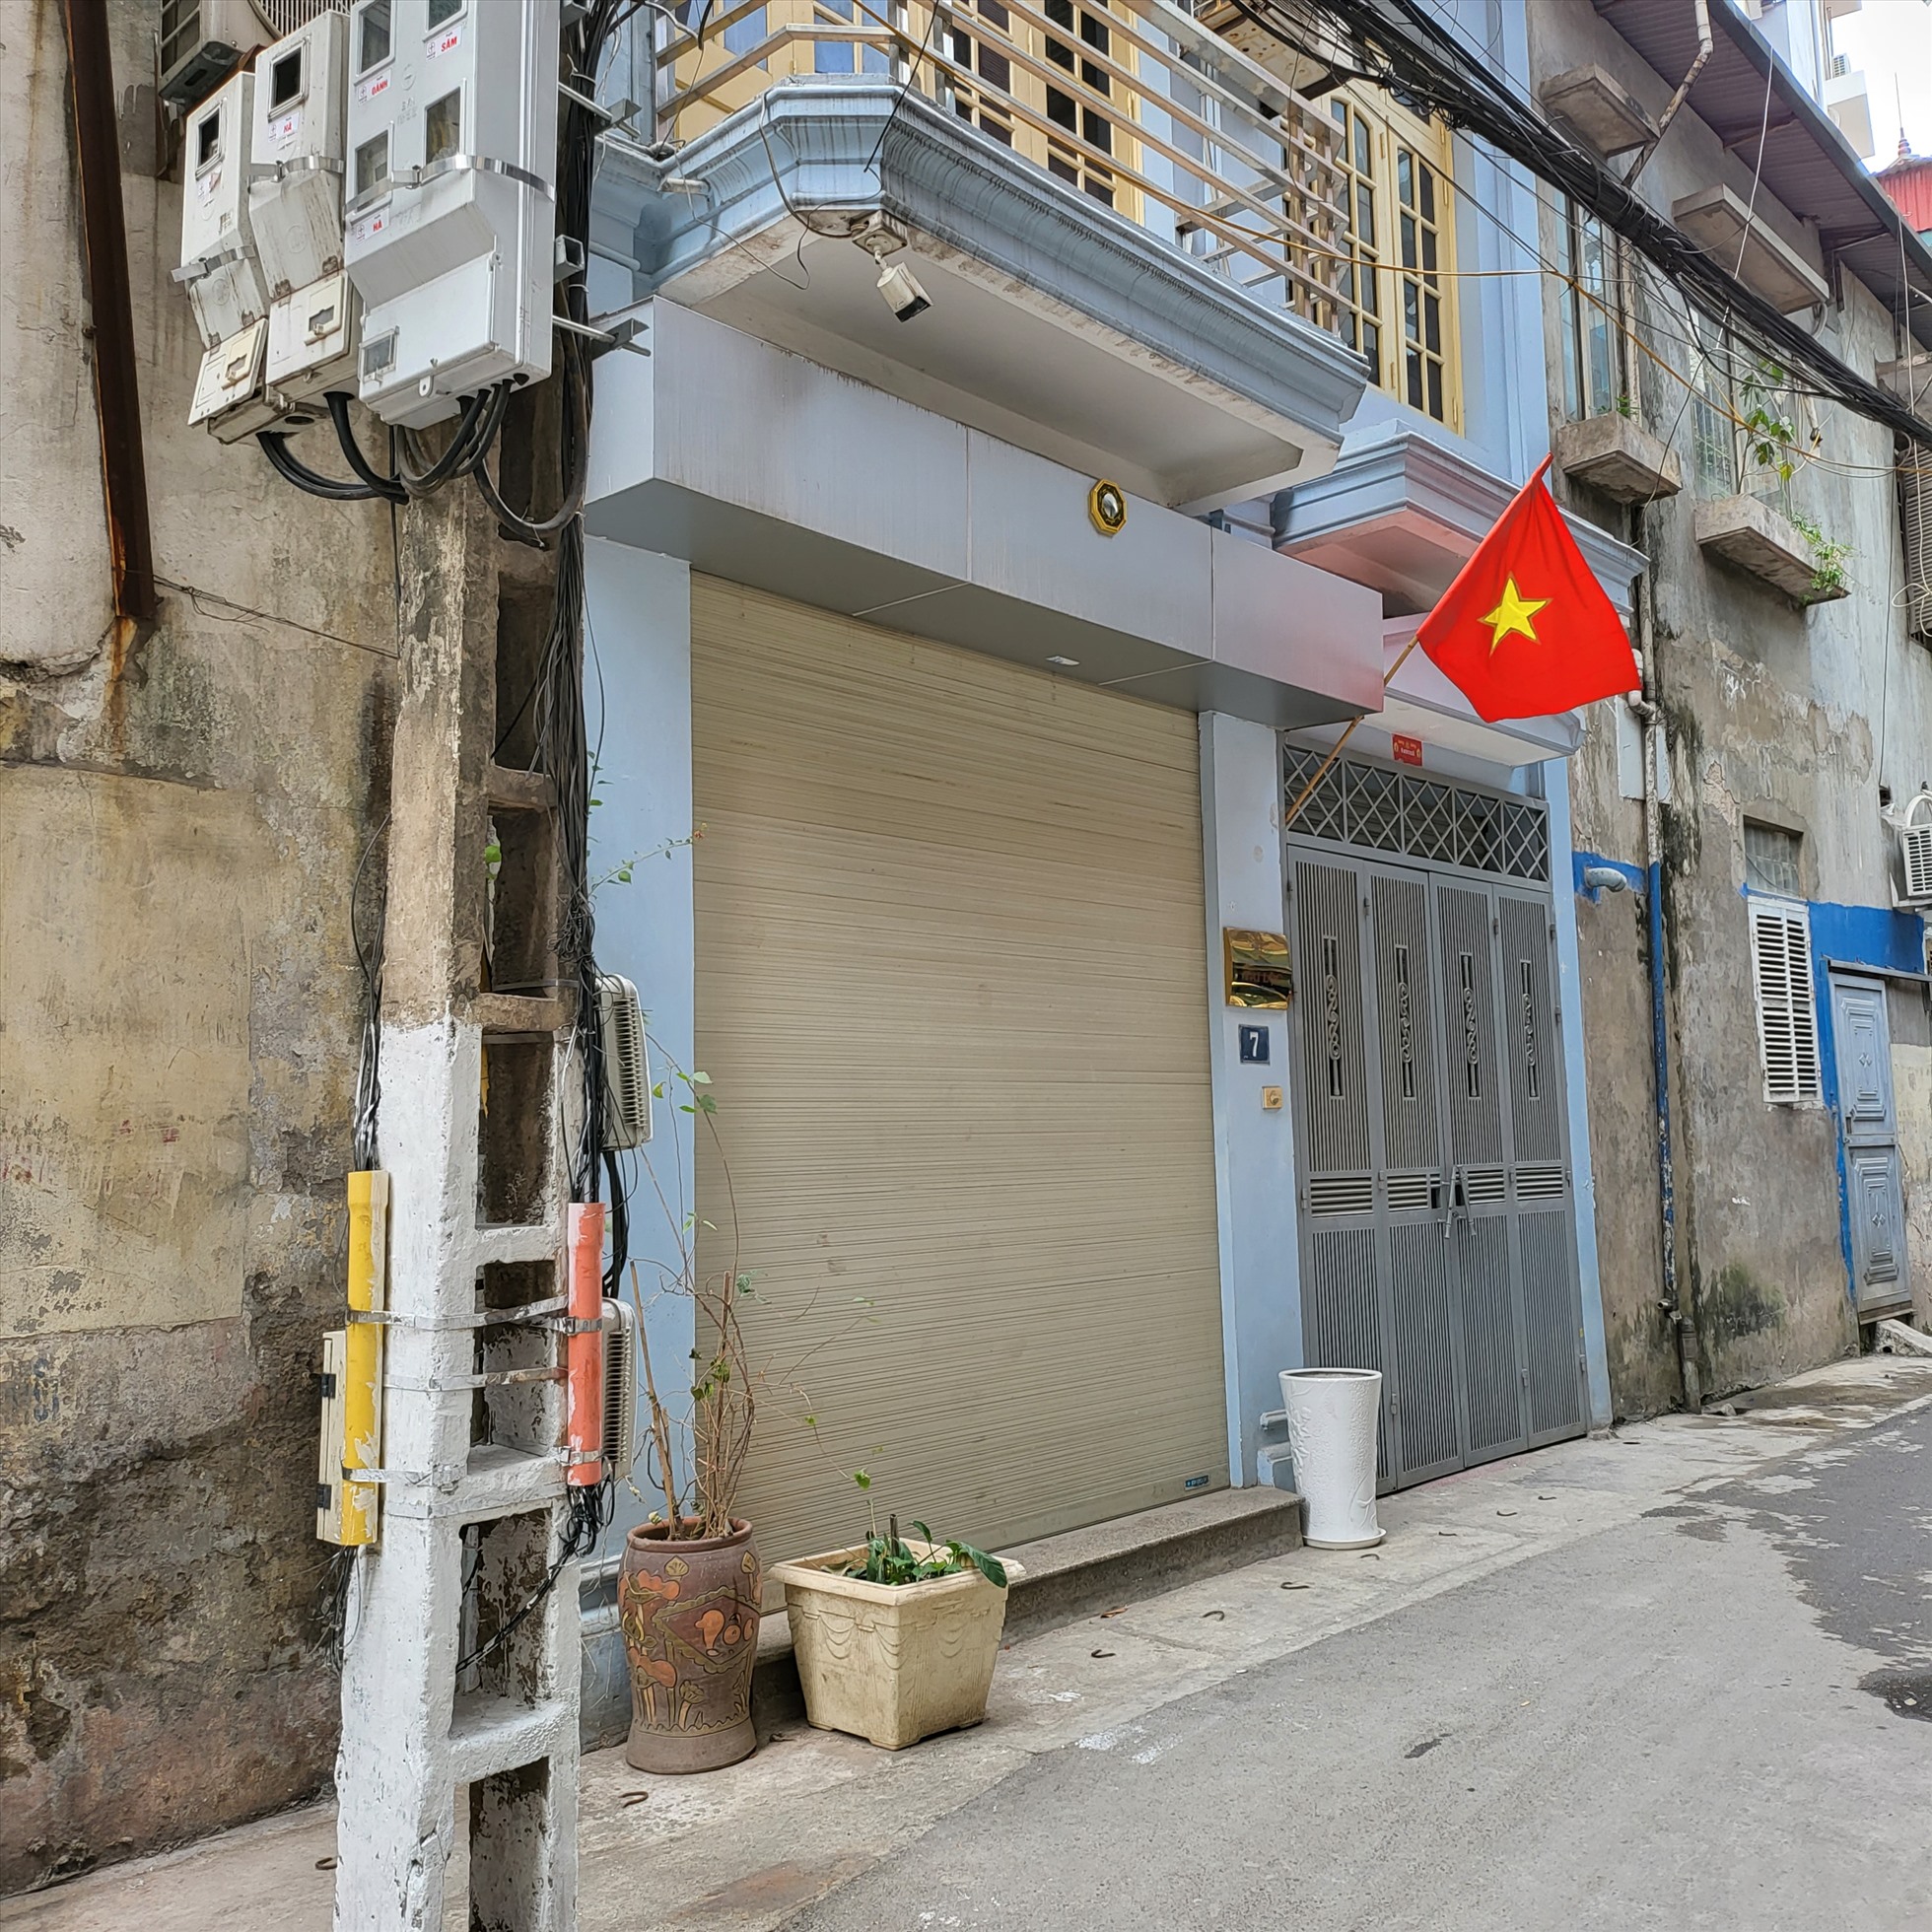 Trụ sở theo đăng ký của công ty Tài Lộc tại số 7, ngõ 128 Hoàng Văn Thái, Hà Nội. Ảnh chụp sáng 18.1.2023. Ảnh M.B